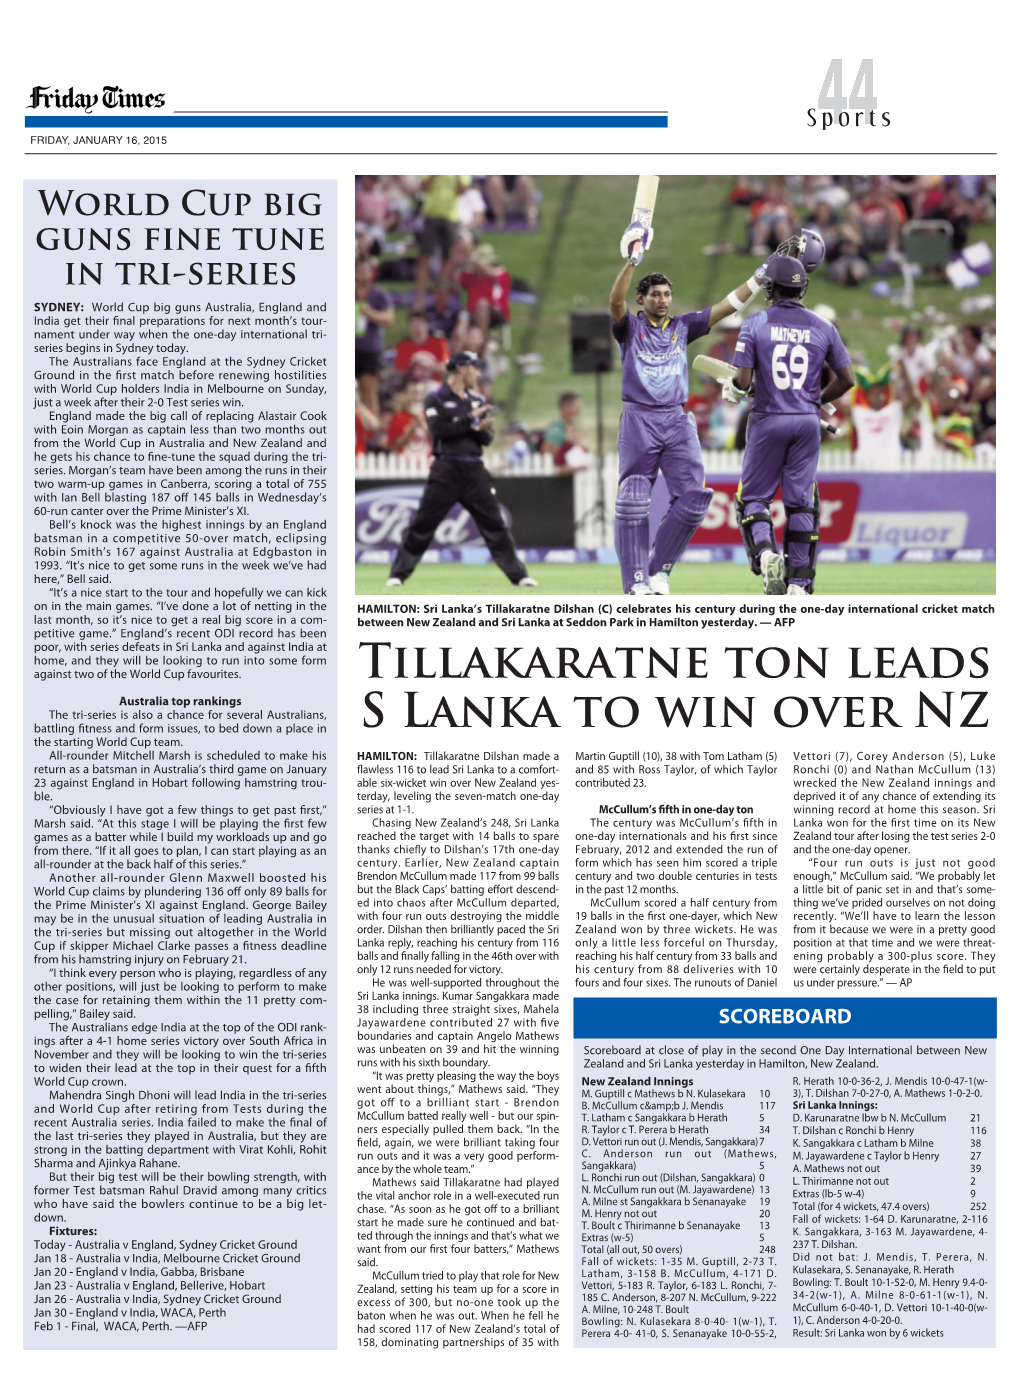 Tillakaratne Ton Leads S Lanka to Win Over NZ